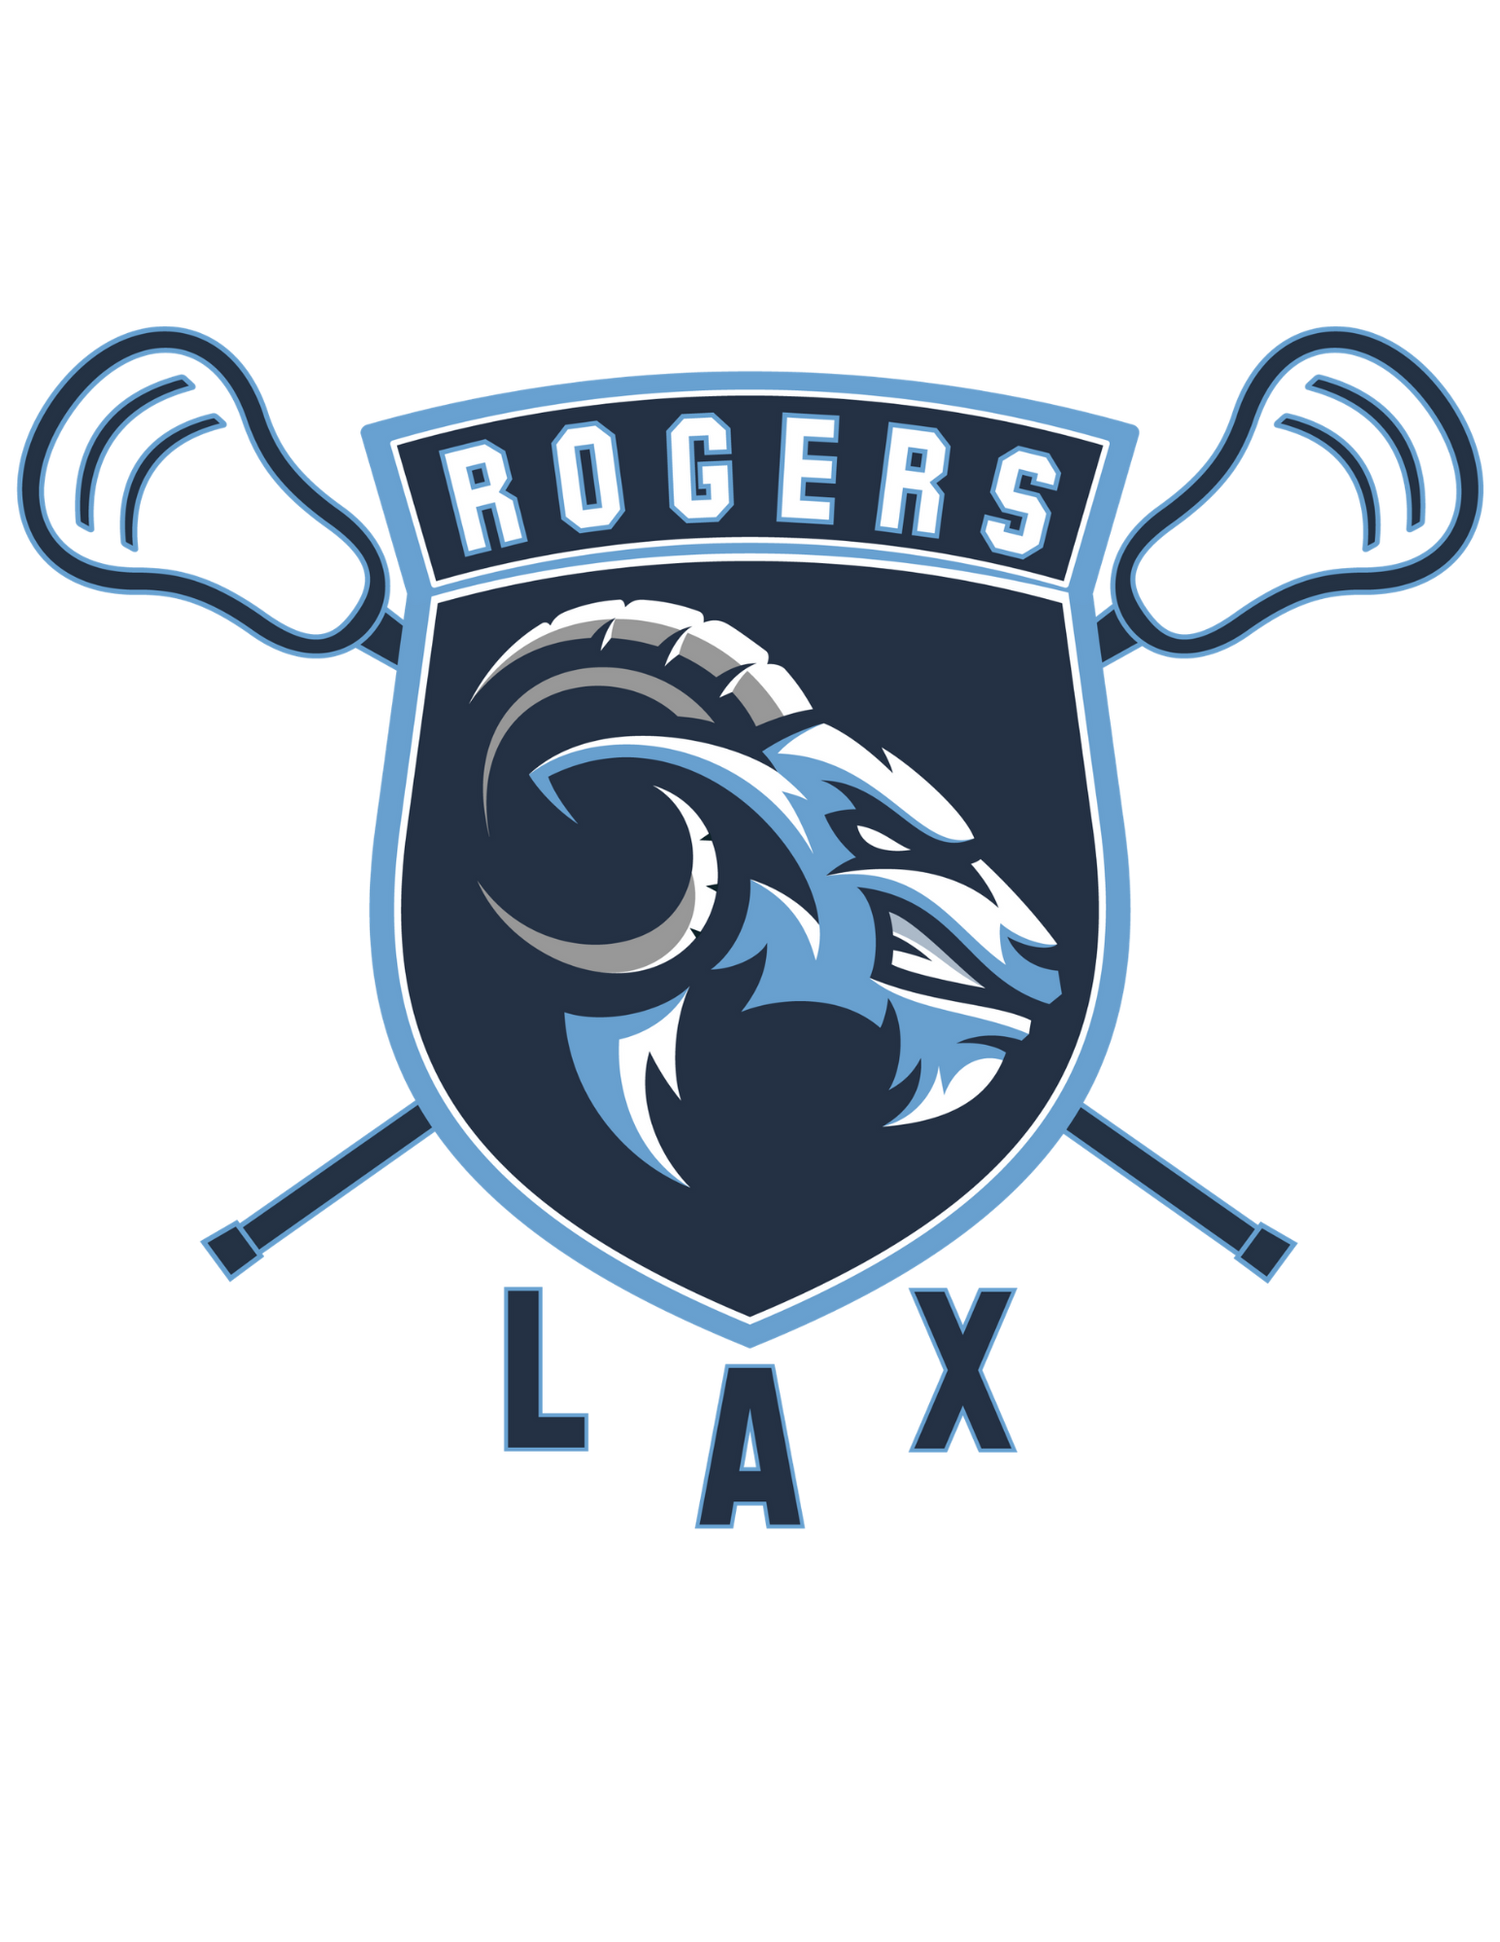 Rogers Lacrosse